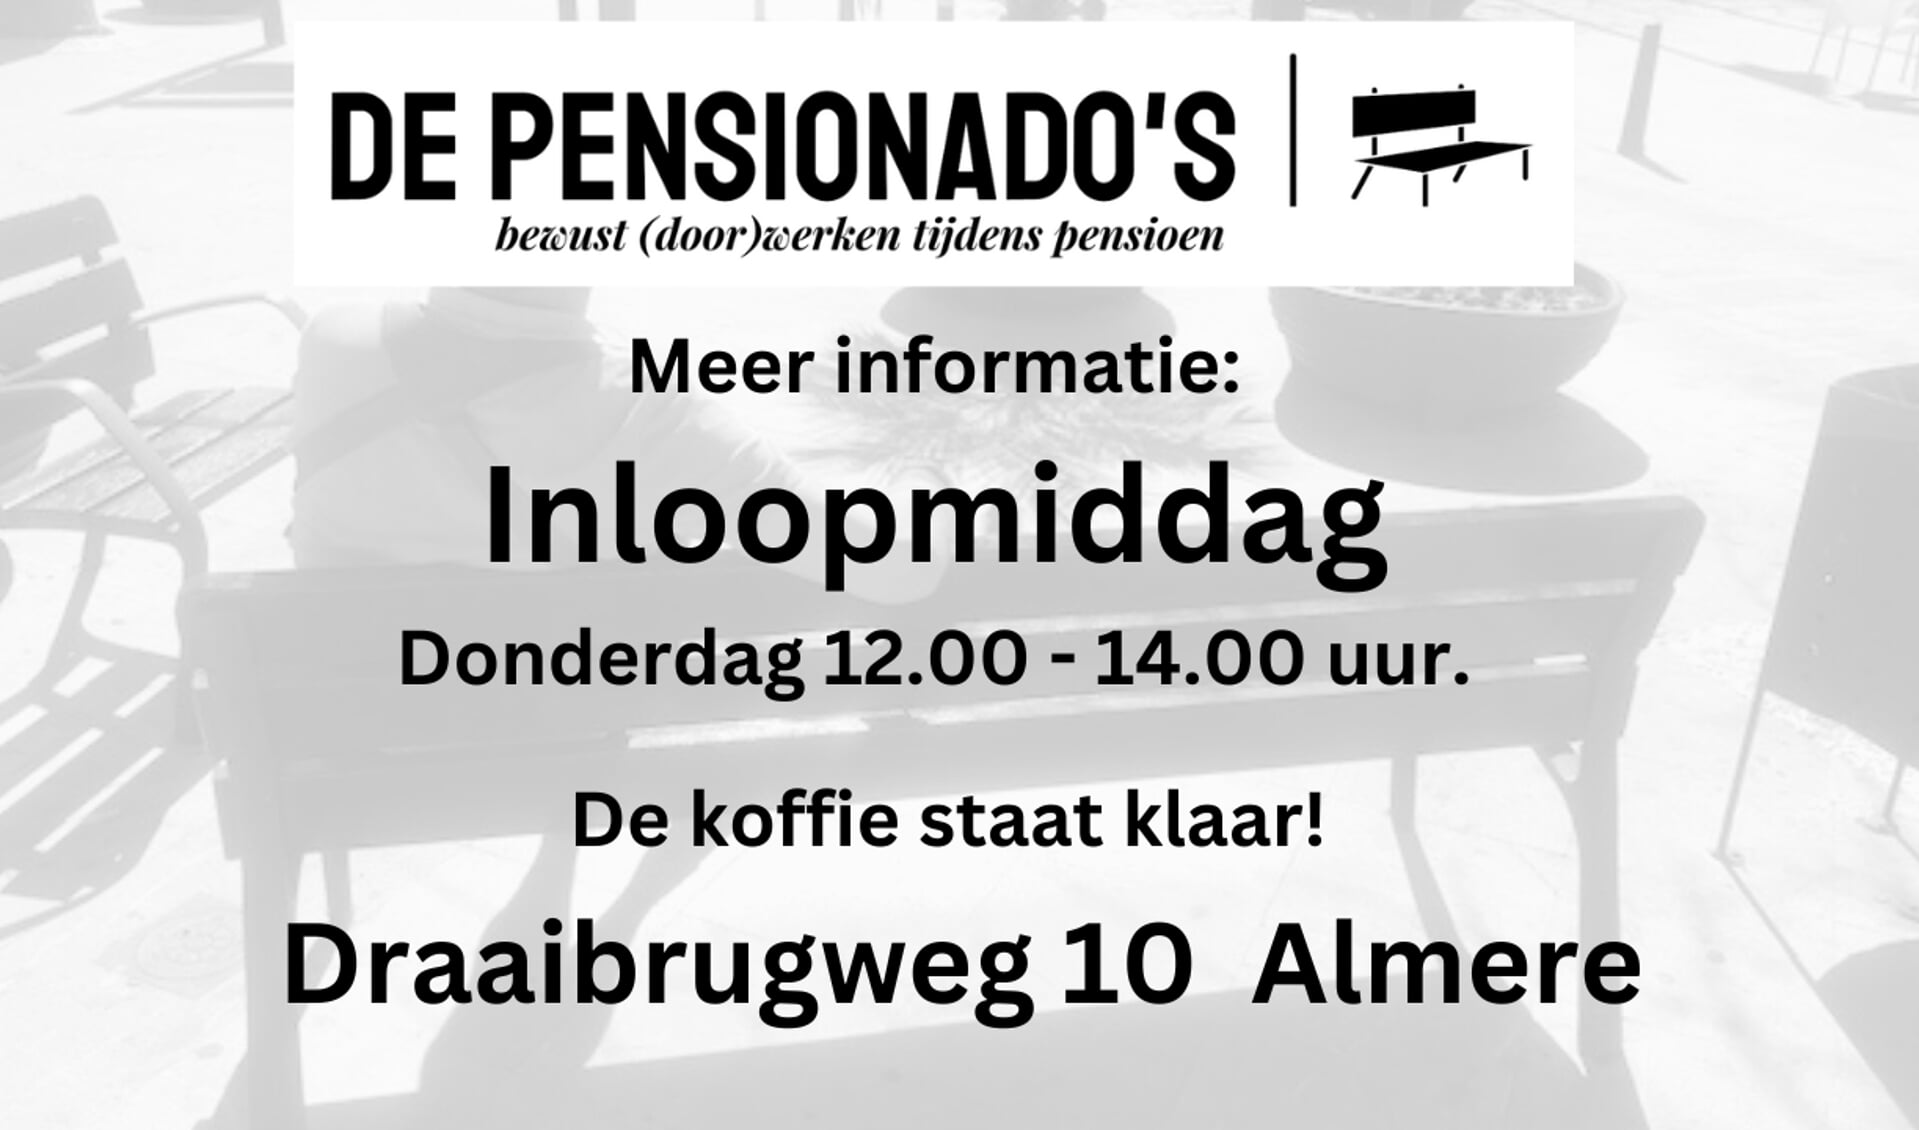 www.depensionados.nl | 088-0887850